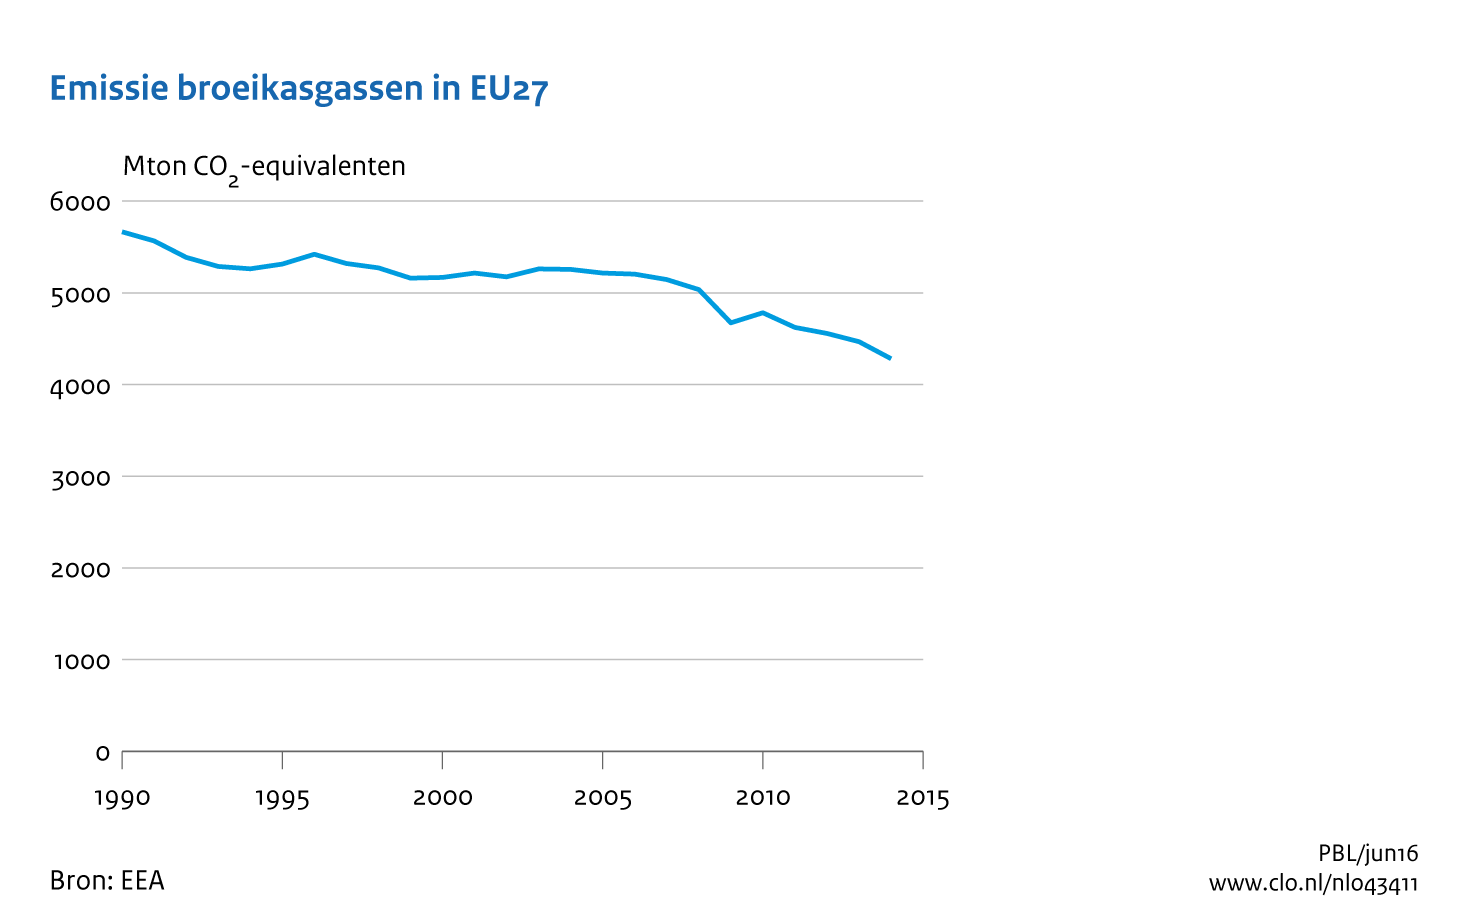 Figuur Uitstoot broeikasgassen in Europa (EU-28), 1990-2014. In de rest van de tekst wordt deze figuur uitgebreider uitgelegd.